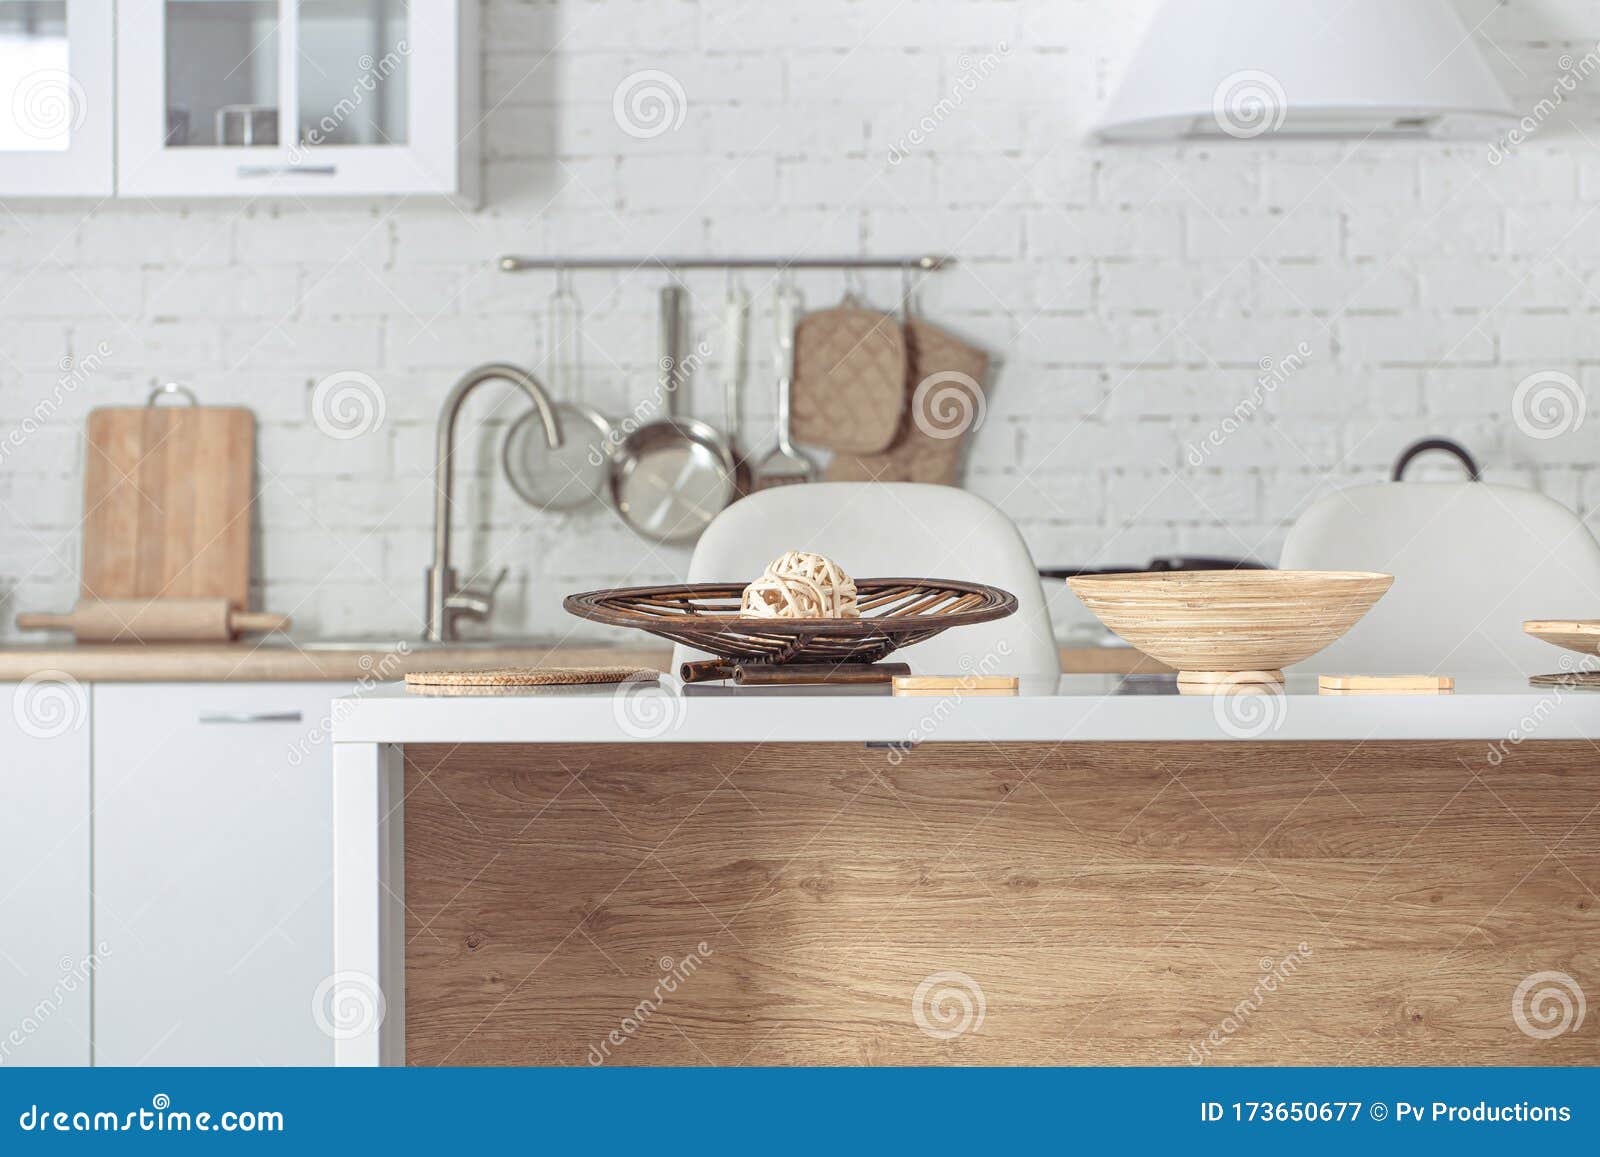 Modern Stylish Scandinavian Kitchen Interior With Kitchen